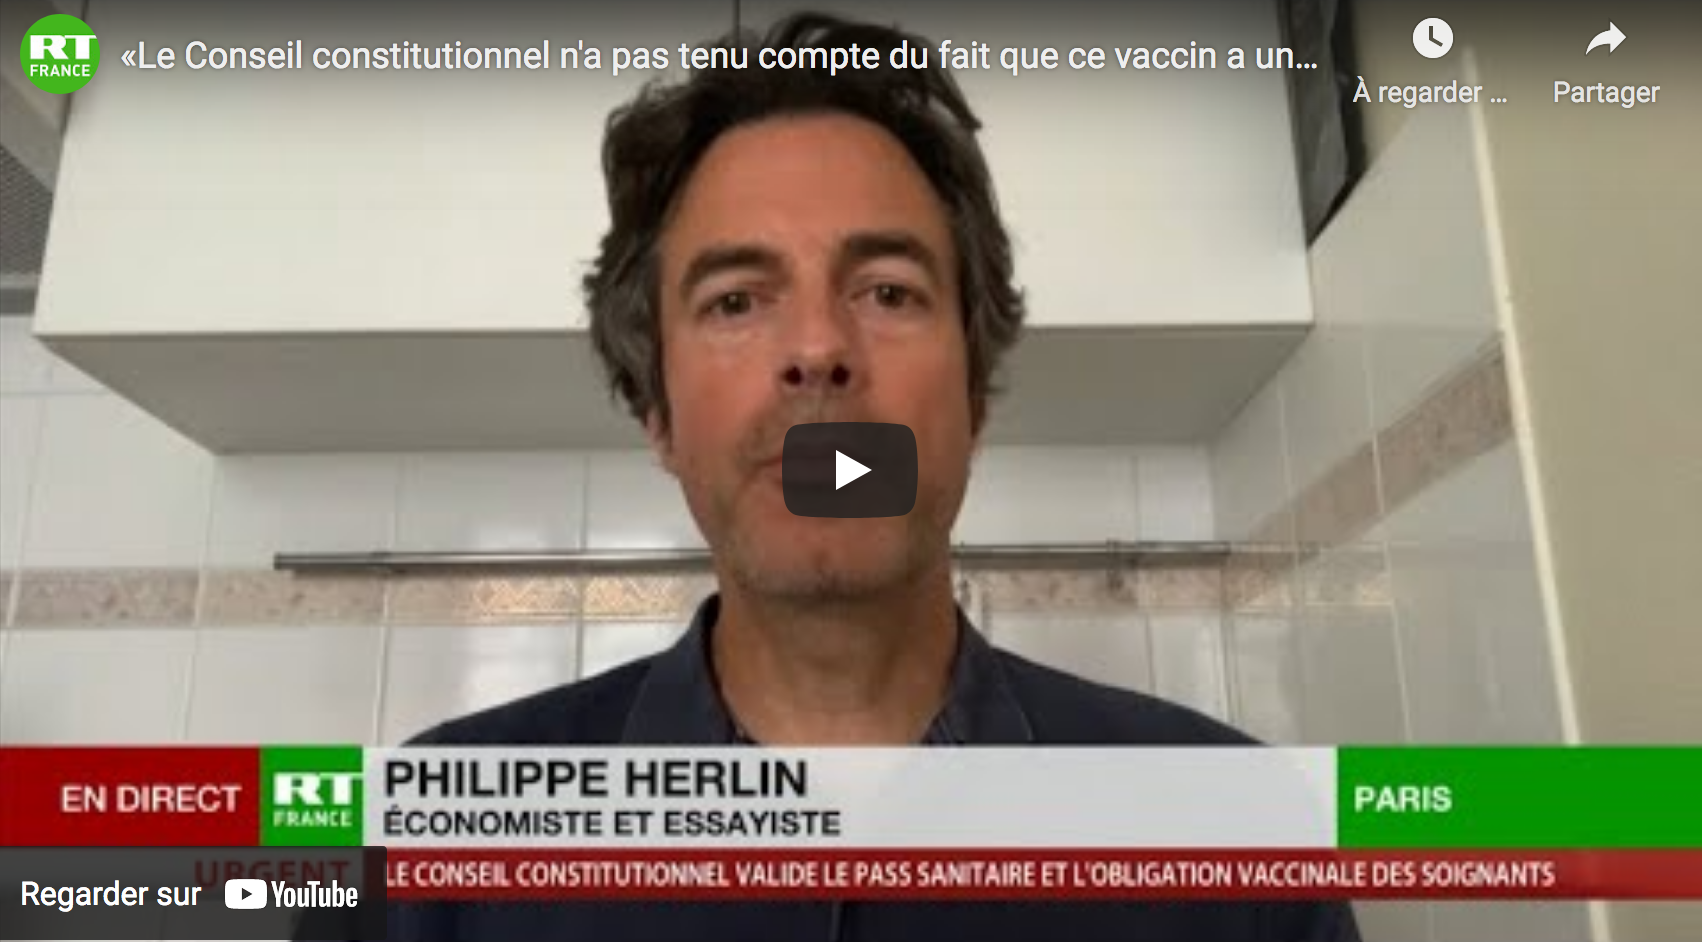 Philippe Herlin : « Le Conseil constitutionnel n’a pas tenu compte du fait que ce vaccin a une balance bénéfice-risque » (VIDÉO)